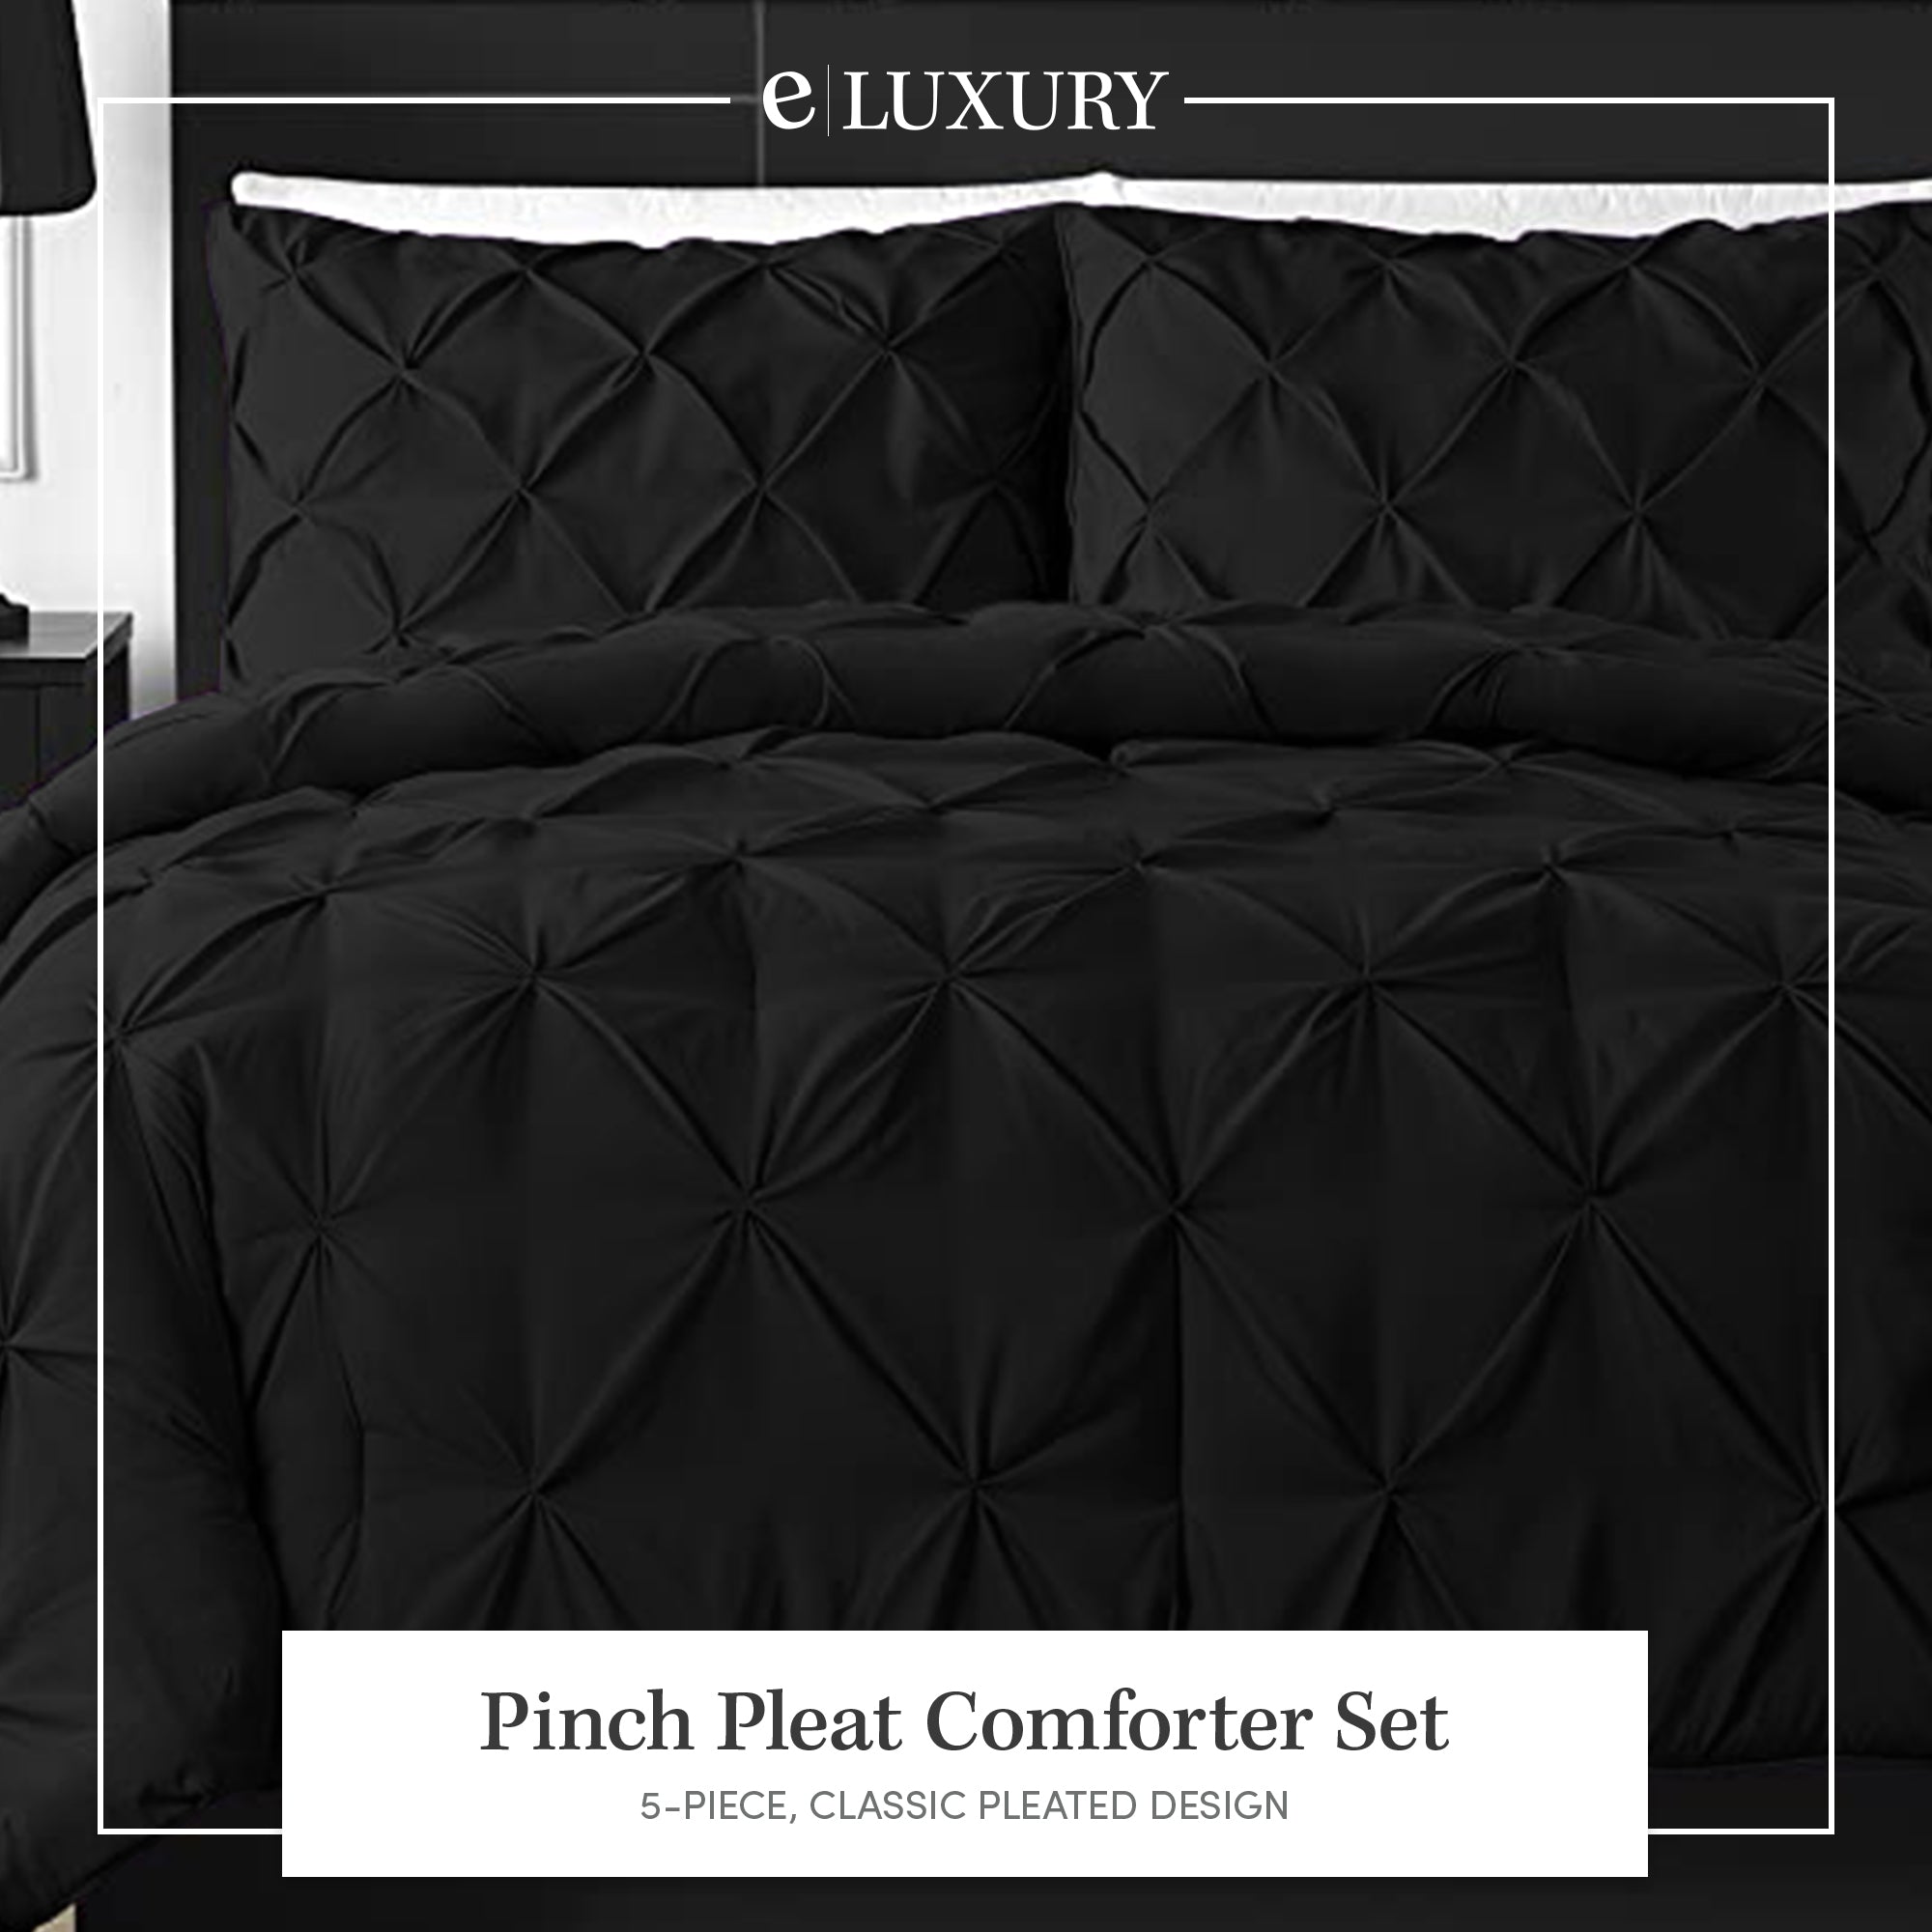 3 Piece Pinch Pleat Down Alternative Comforter Set